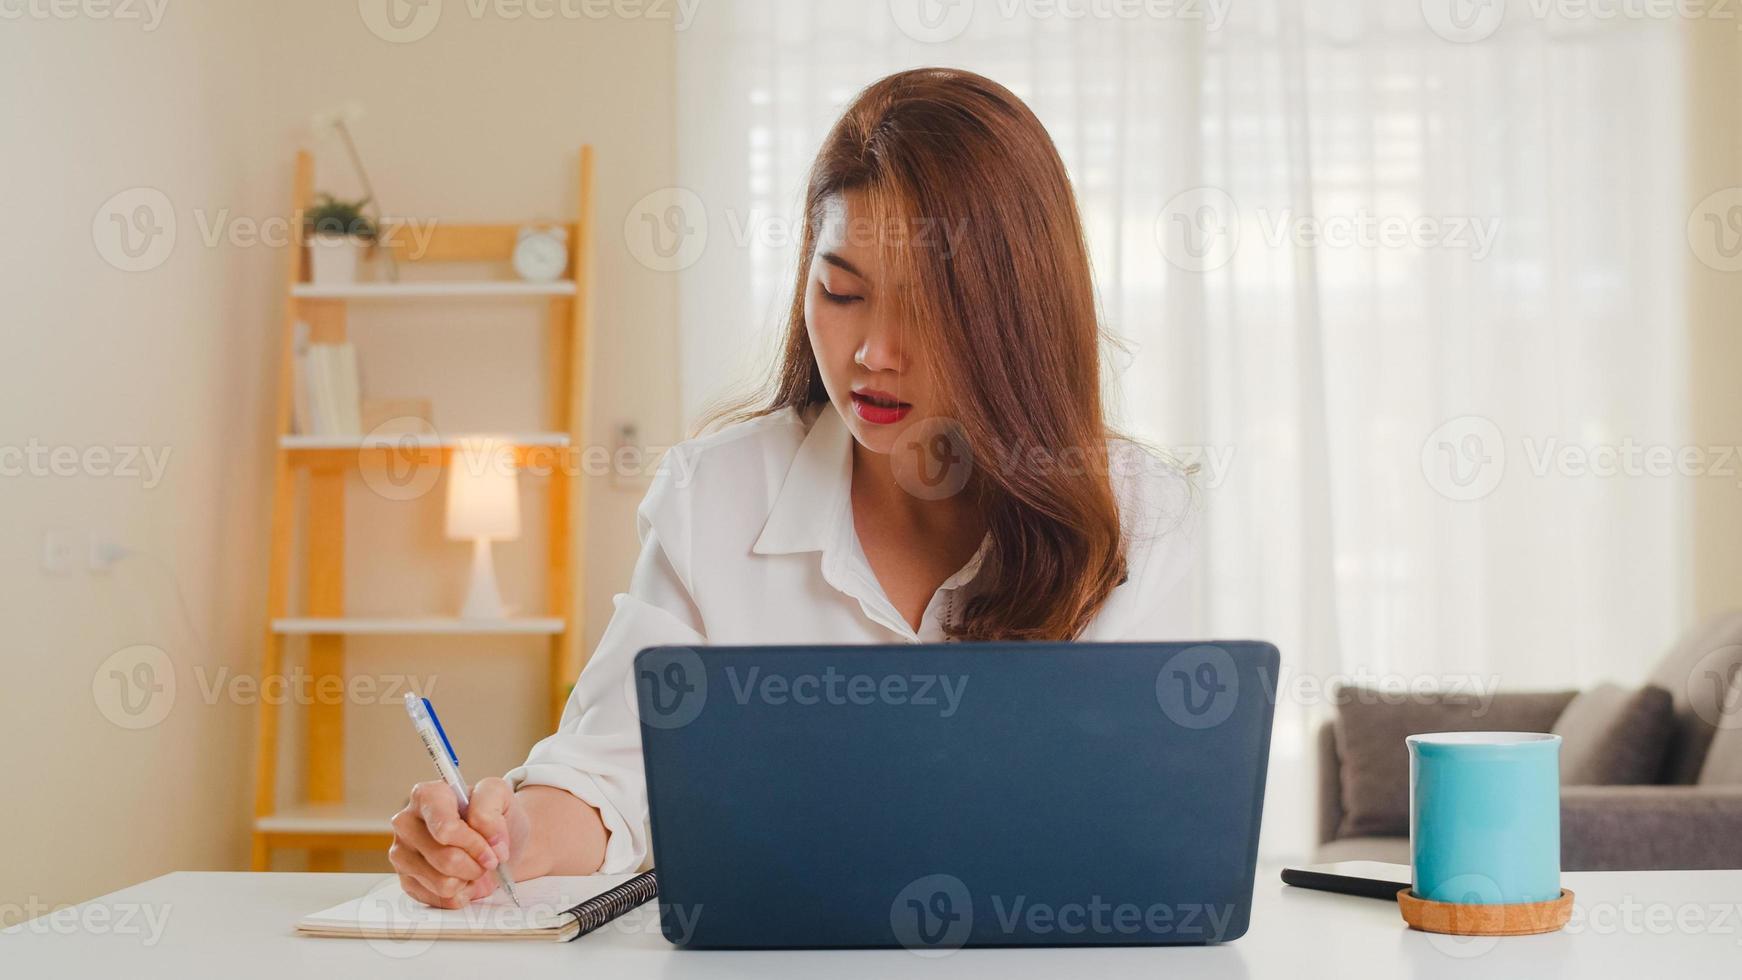 Retrato de ropa casual de mujeres asiáticas independientes usando una computadora portátil que trabaja en la sala de estar en casa. trabajo desde casa, trabajo a distancia, autoaislamiento, distanciamiento social, cuarentena para la prevención del coronavirus. foto